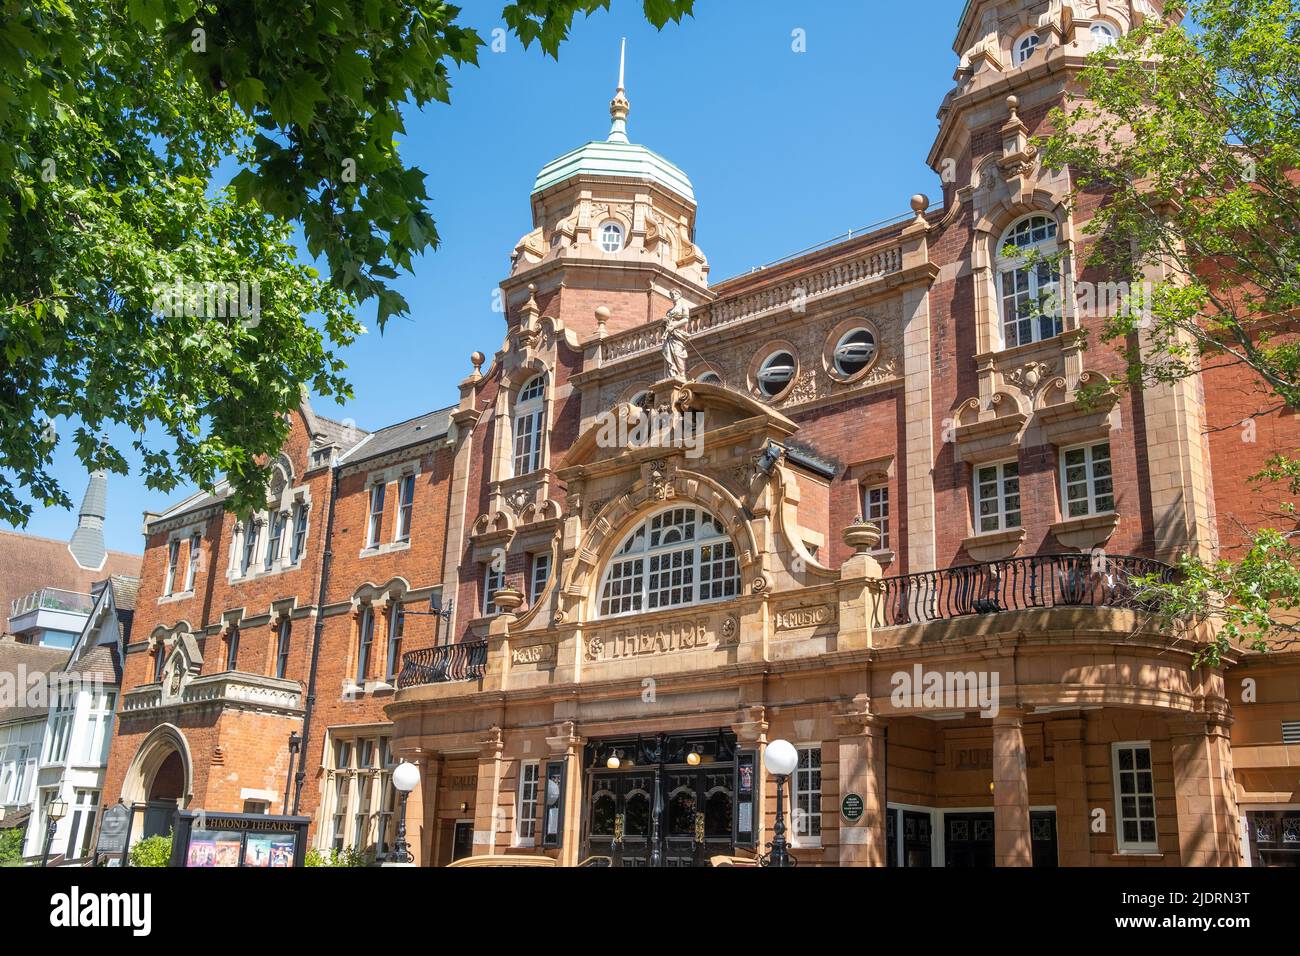 London - Mai 2022: Richmond Theatre, ein Wahrzeichen des britischen viktorianischen Theaters im Südwesten Londons Stockfoto